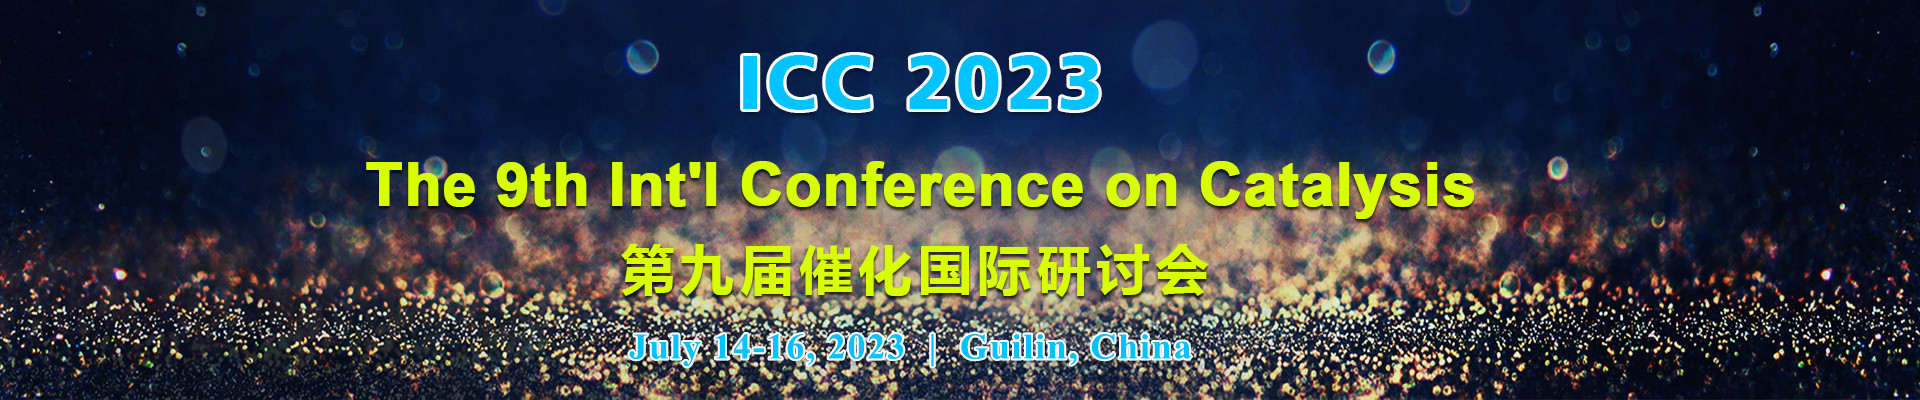 第九届催化国际研讨会 (ICC 2023) 